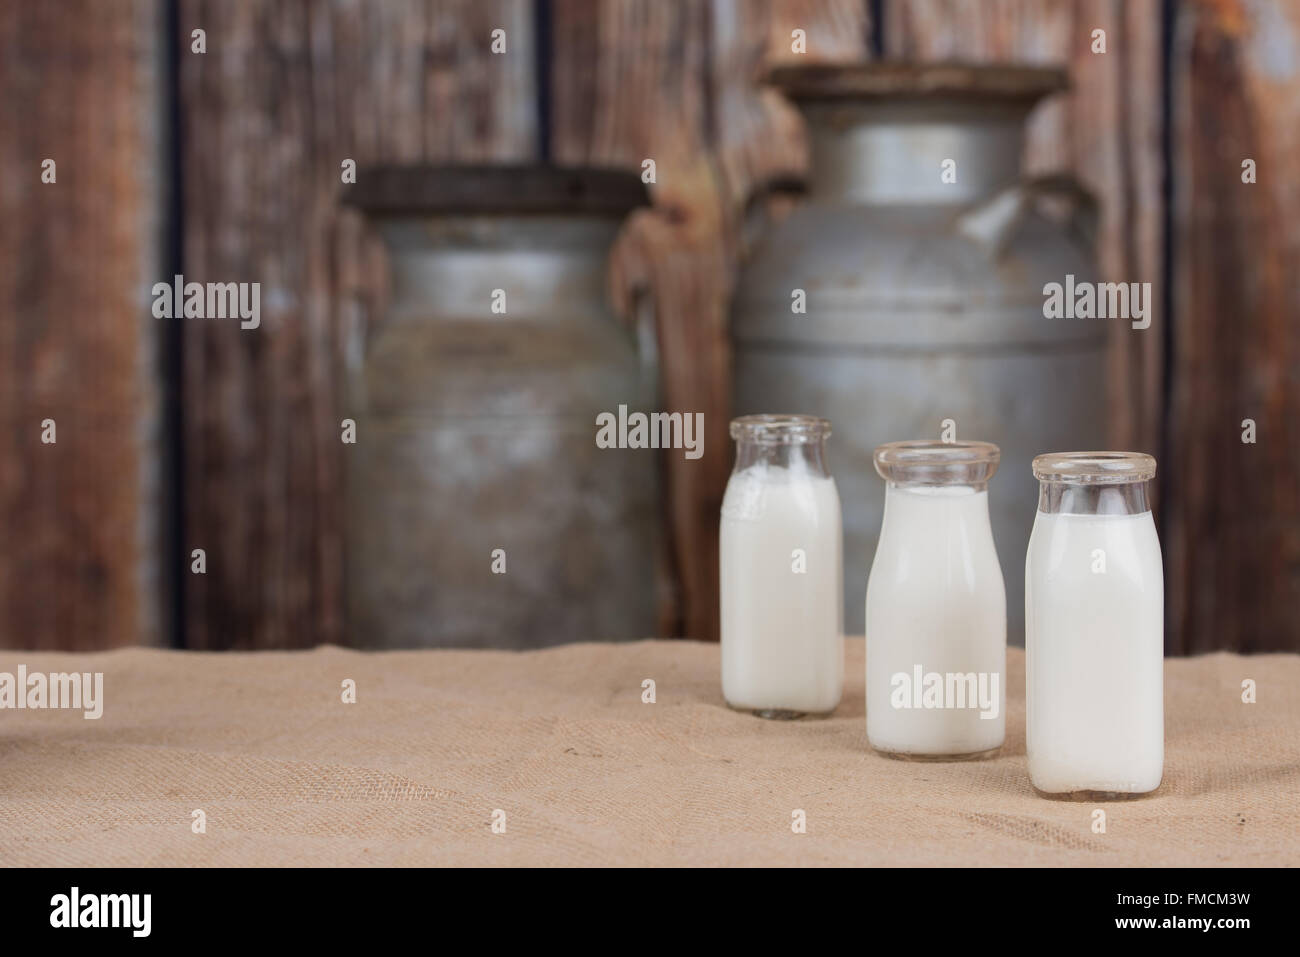 Tre vecchie bottiglie di latte schierate sul lato destro. Spazio vuoto sul lato sinistro Foto Stock